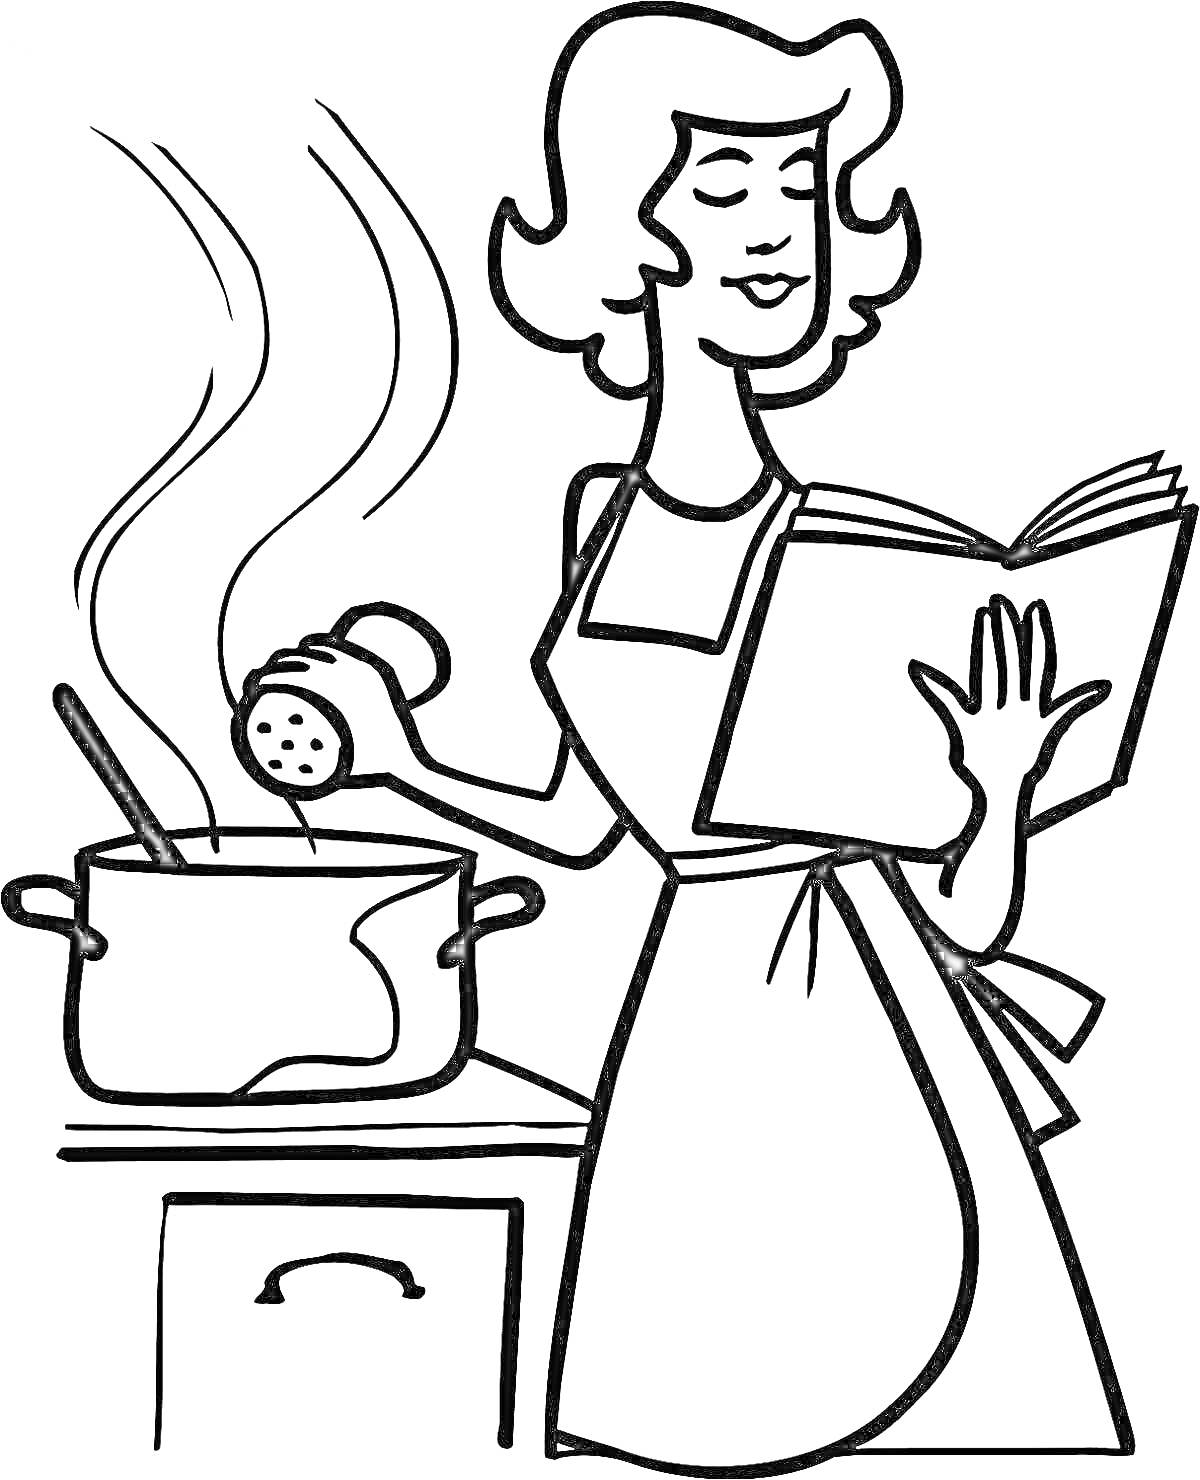 Мама готовит на кухне, держа книгу рецептов и добавляя специи в кастрюлю на плите